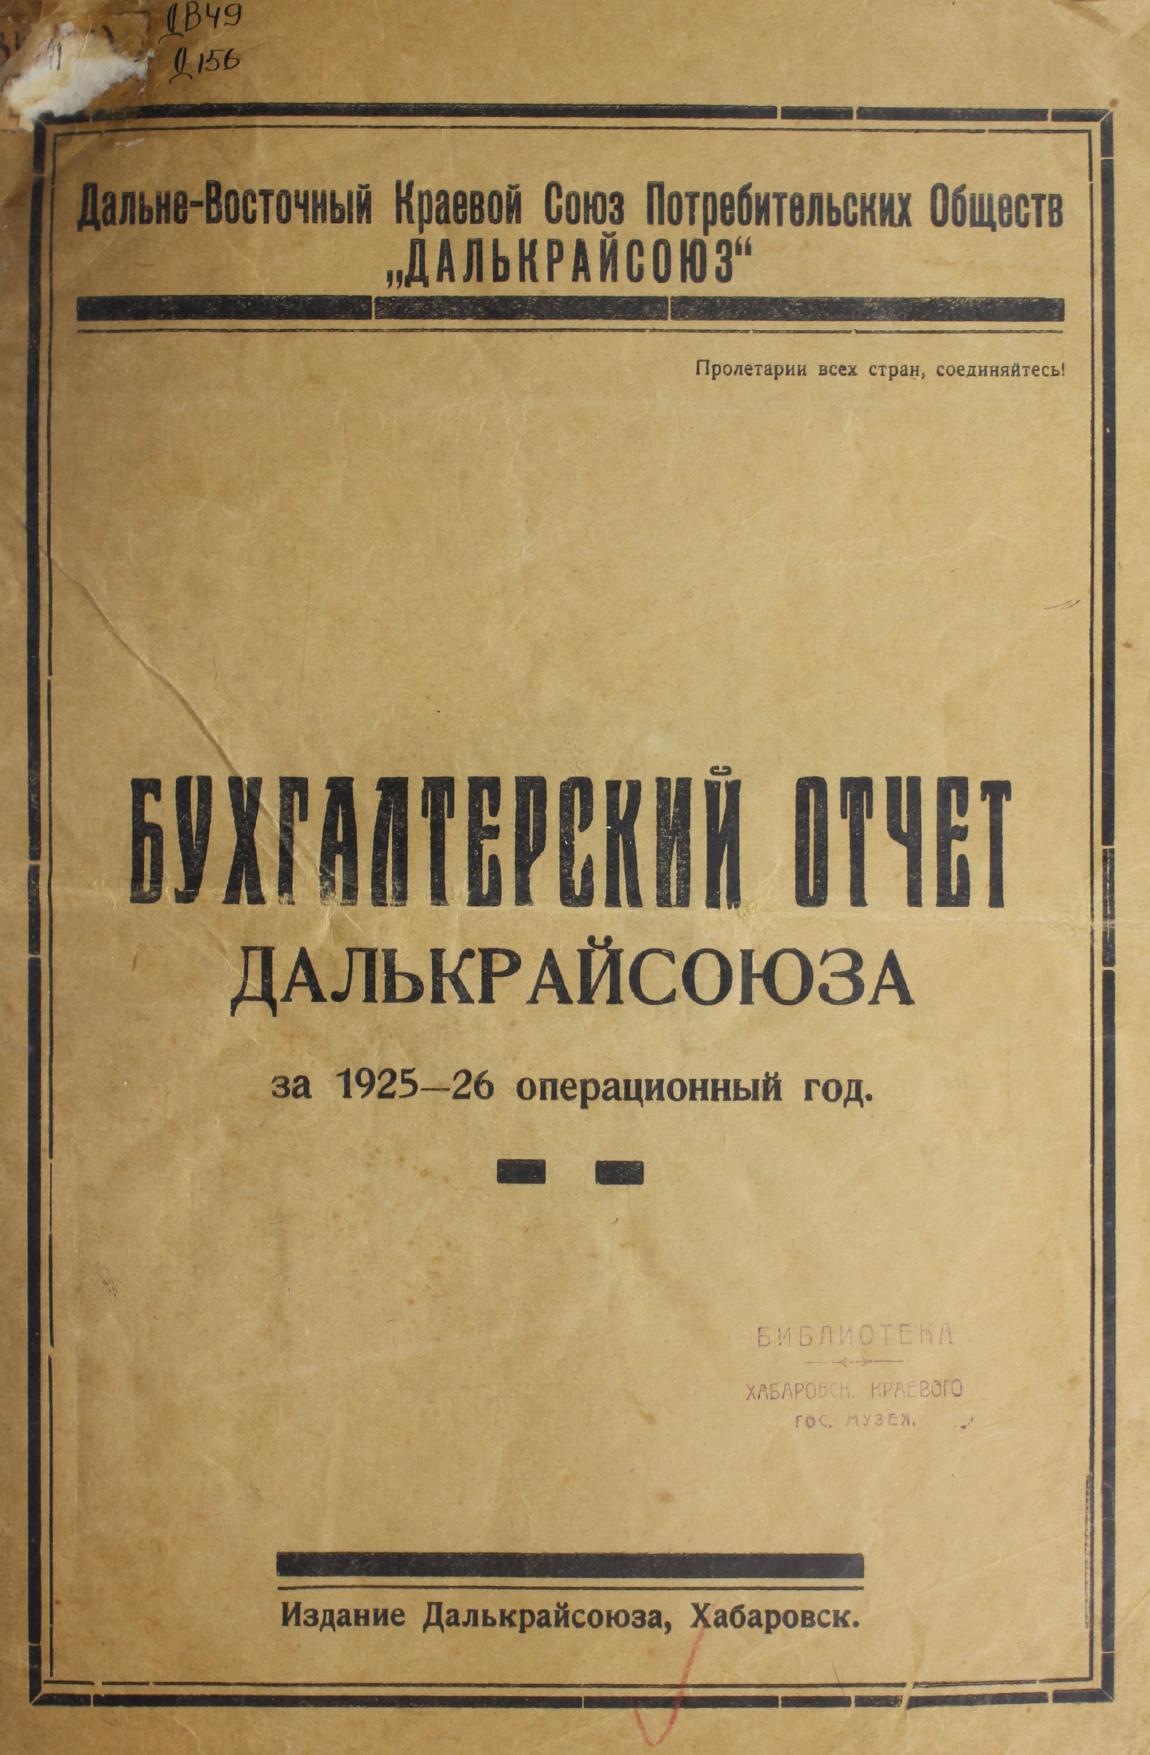 Бухгалтерский отчет Далькрайсоюза за 1925-1926 операционный год Дальневосточный краевой союз потребительских обществ